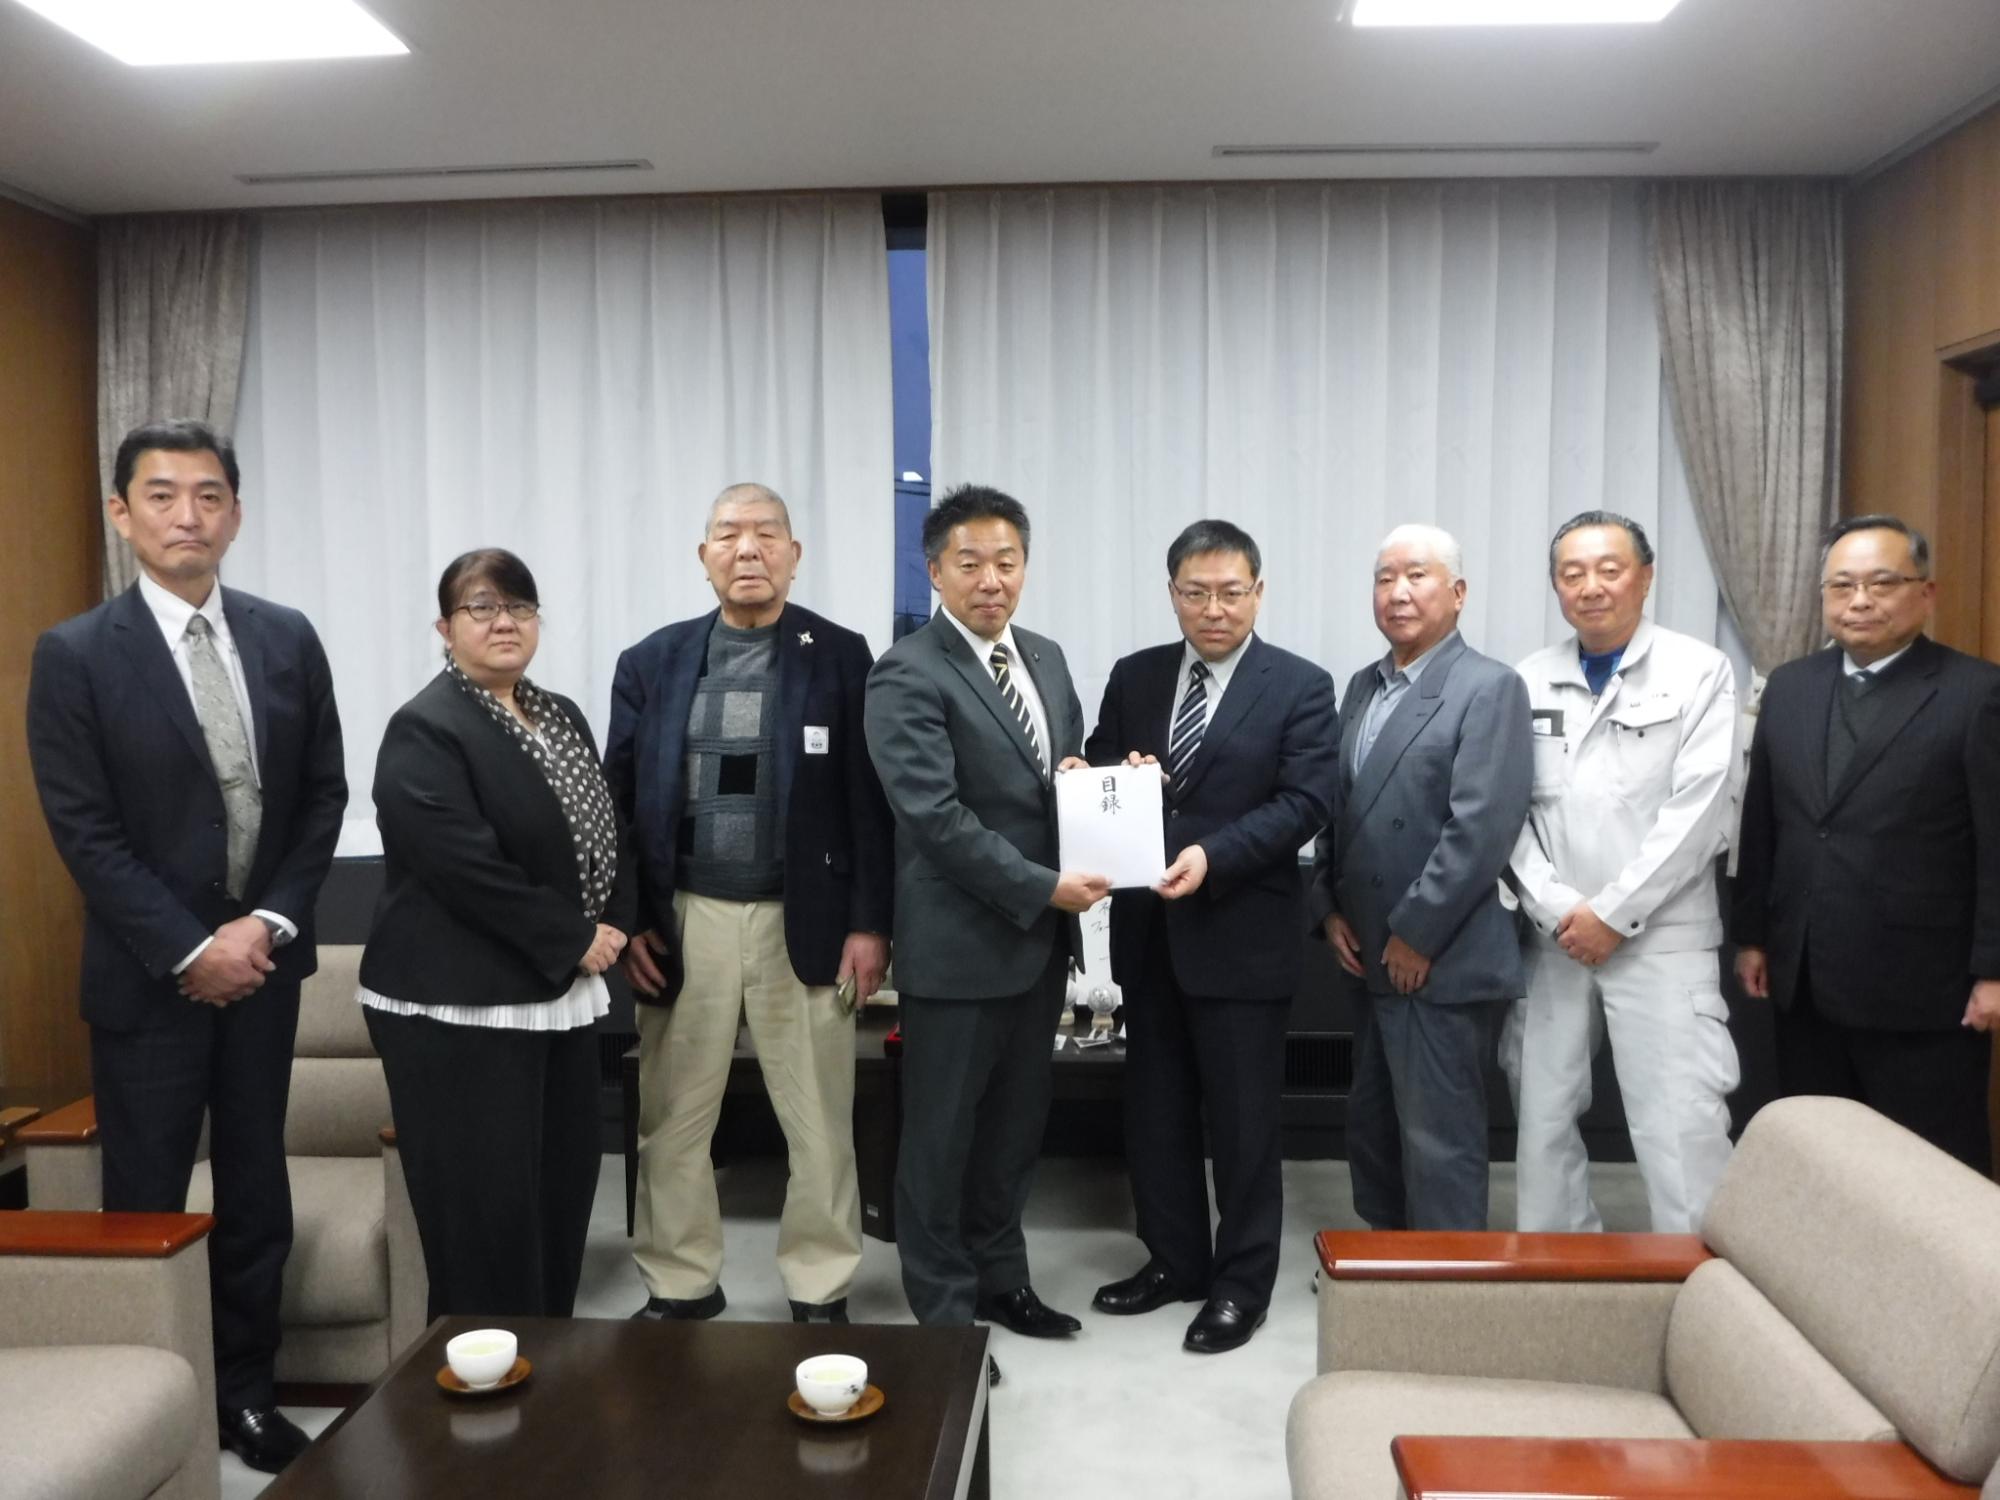 大和市全国県人会連合会事務局長などを含めた7名が古谷田市長に義援金を手渡ししている写真